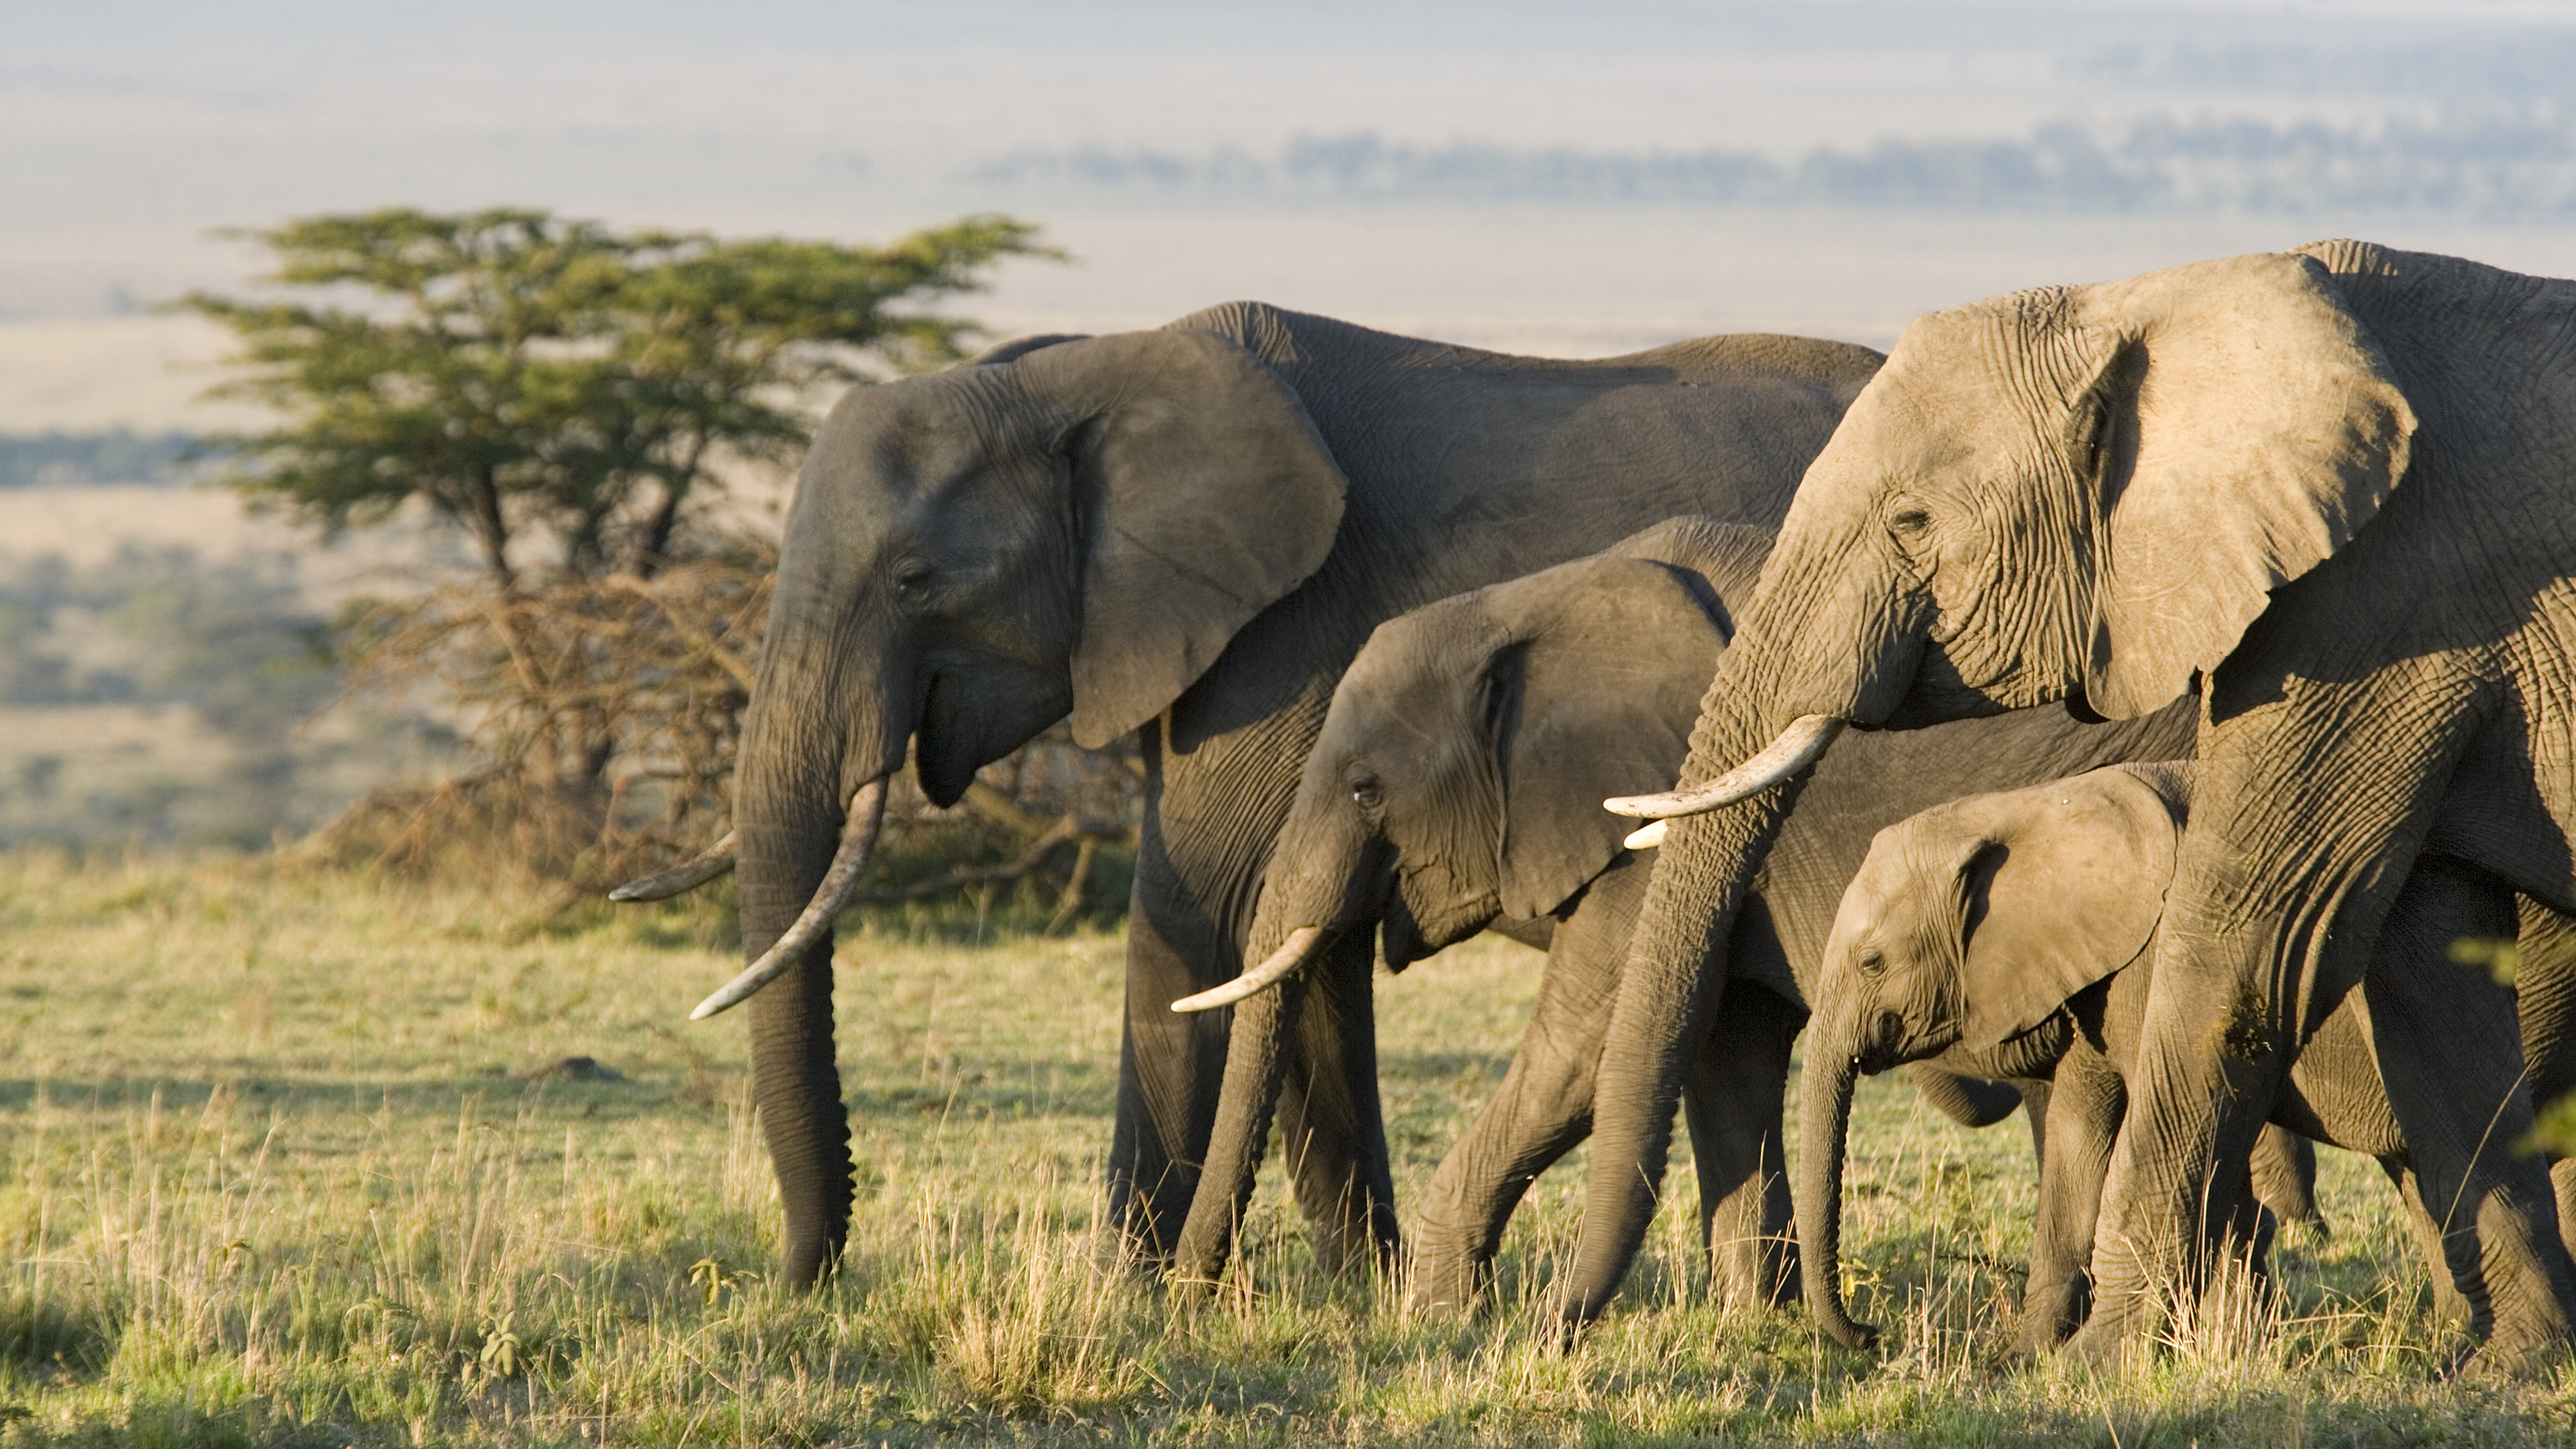 <p><strong>Слон</strong></p>

<p>Дългите периоди на развитие в утробата са често срещани сред силно интелигентните животни. Слоновете имат най-дългия период на бременност от всички бозайници, носейки малките си от 18 до 22 месеца преди раждането.</p>